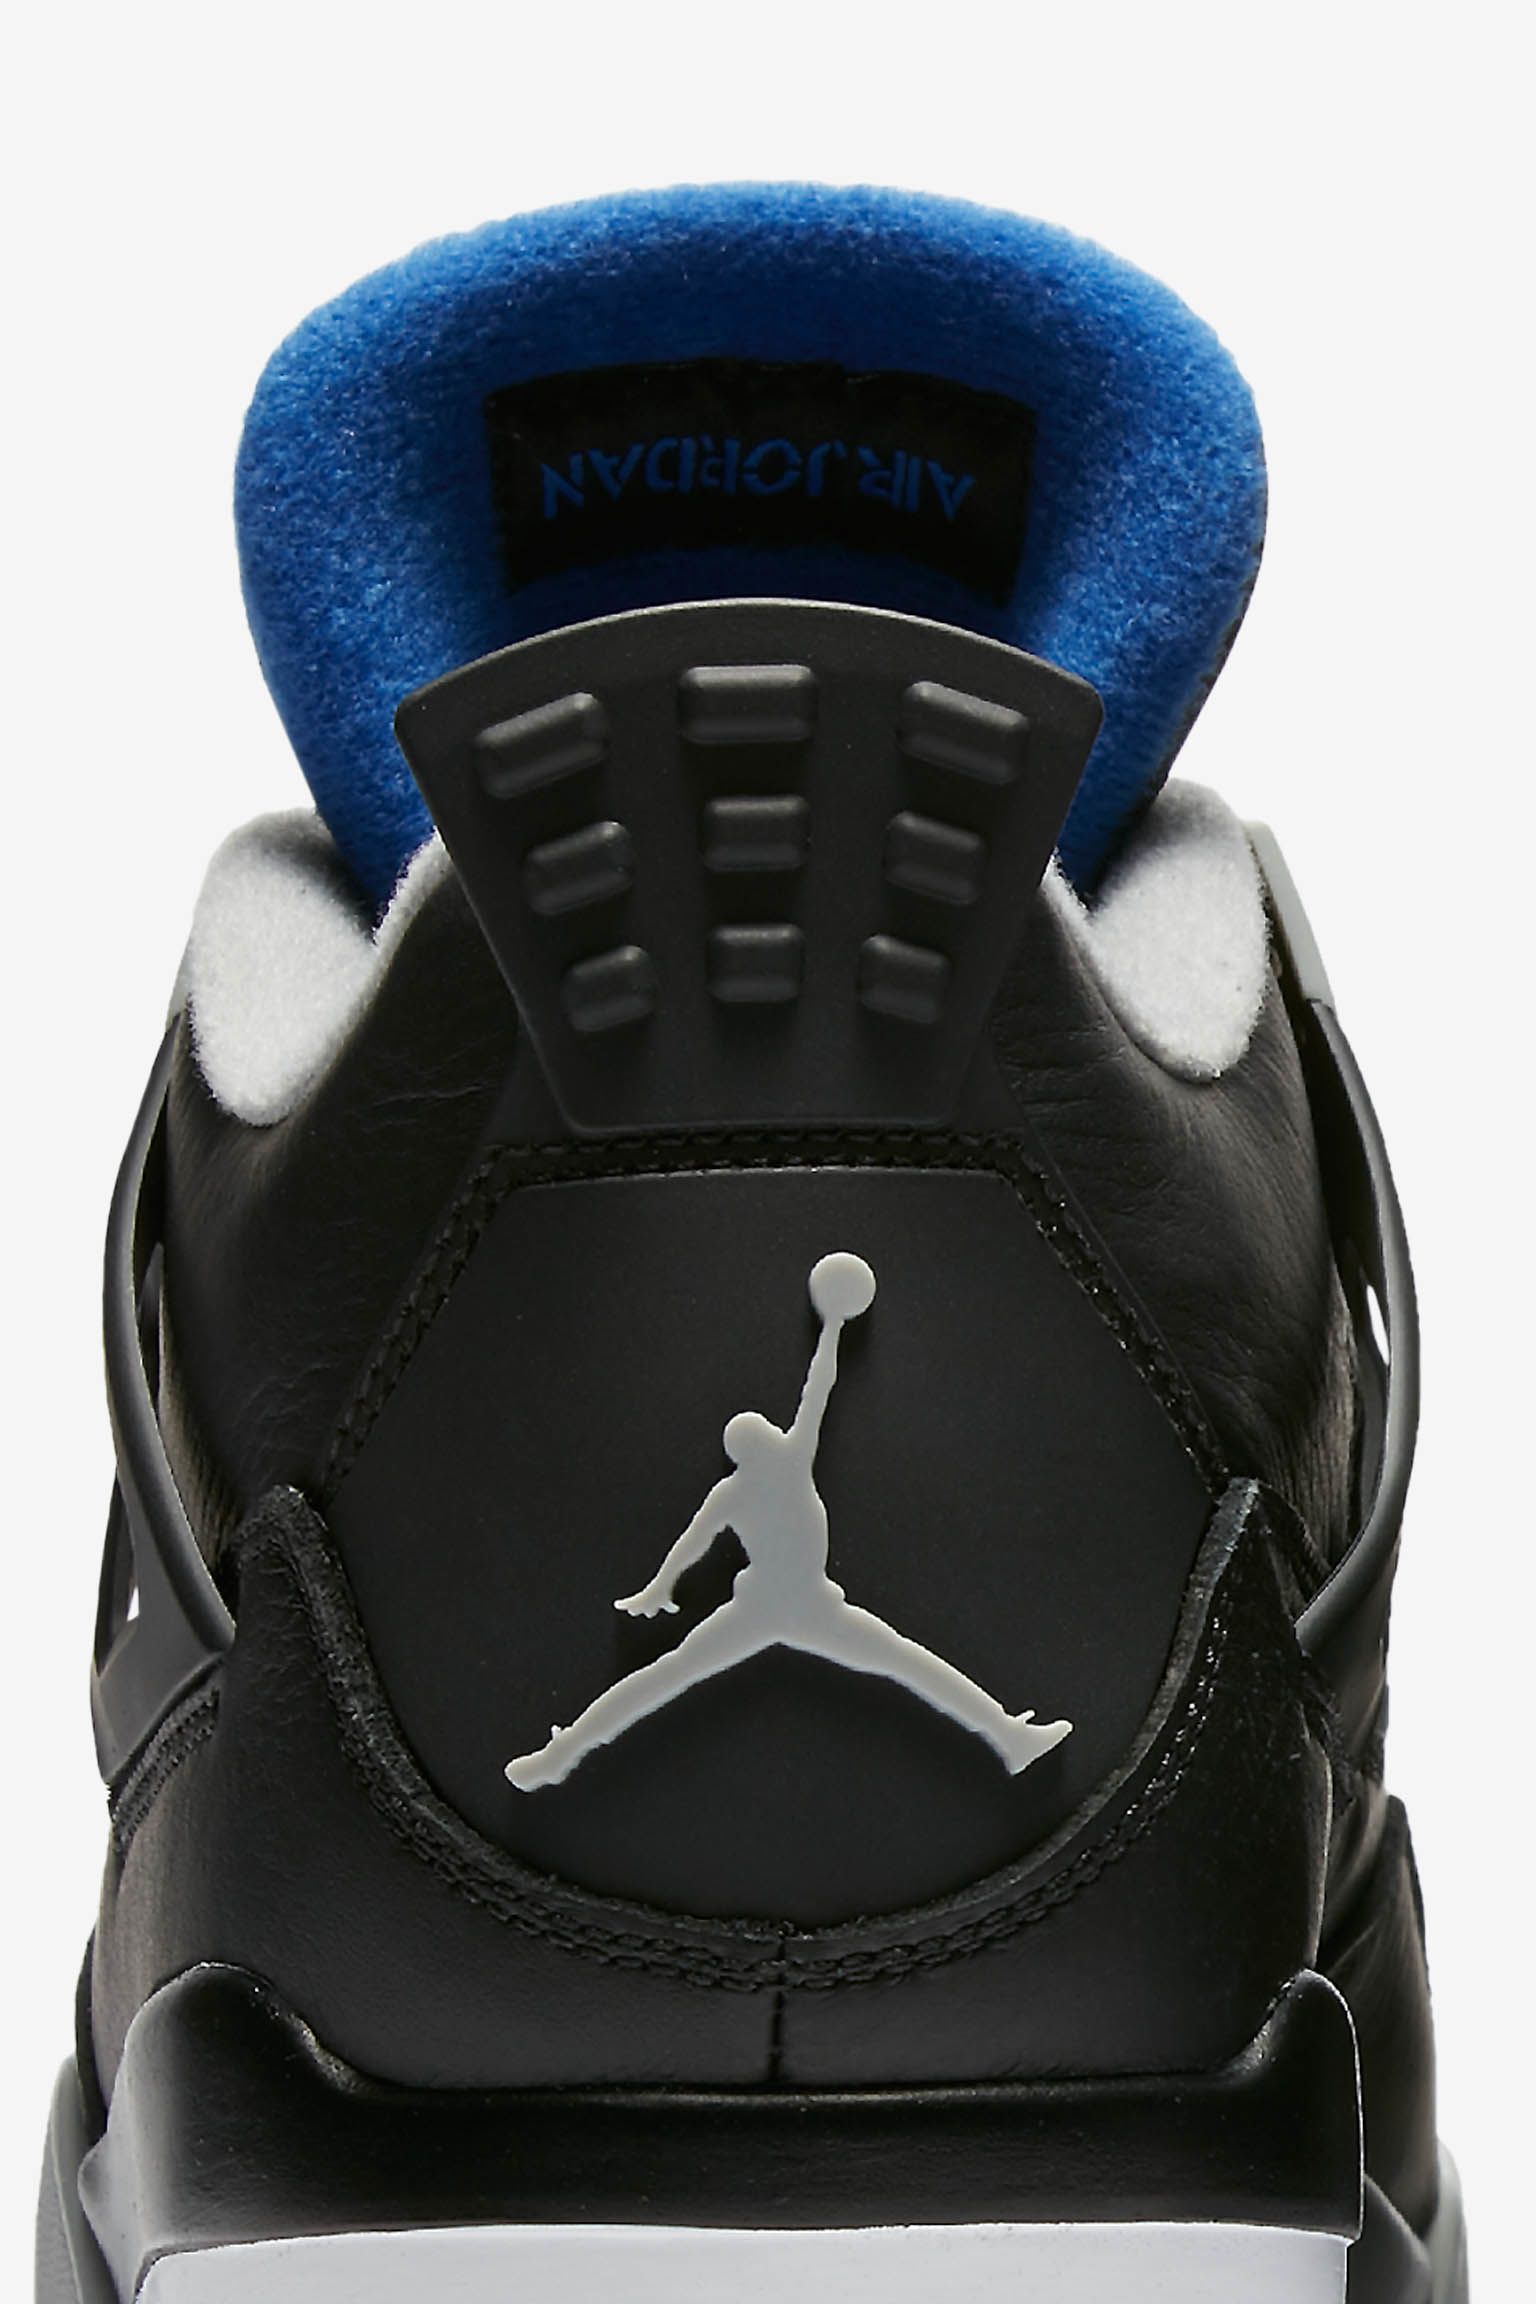 Air Jordan 4 Retro 'Motorsport Away' Release Date. Nike SNKRS